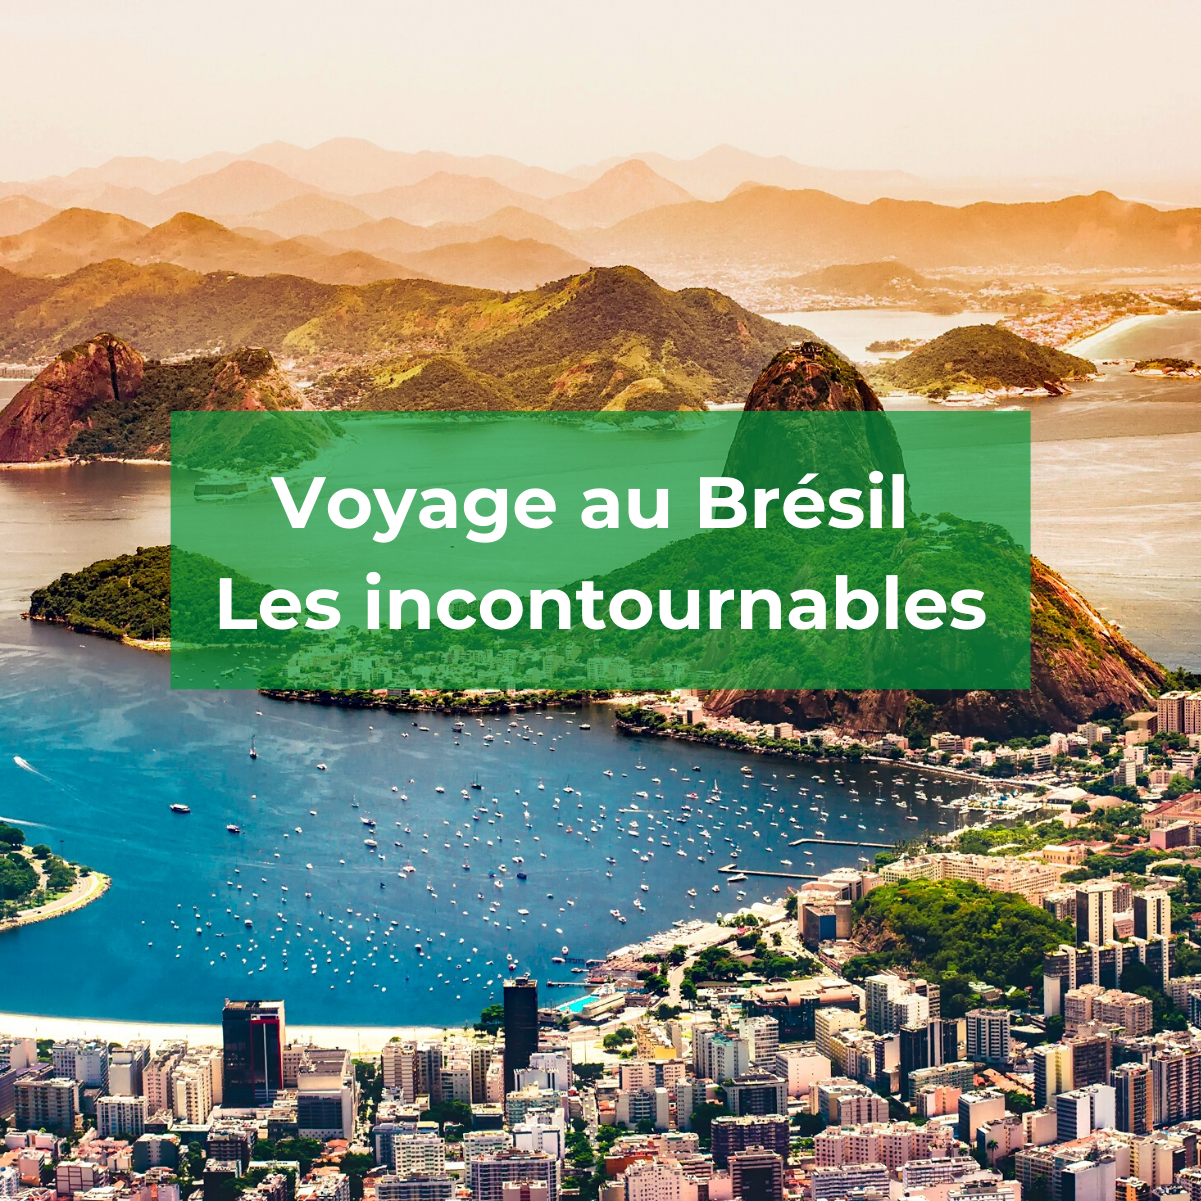 Préparez votre voyage au Brésil – Les incontournables